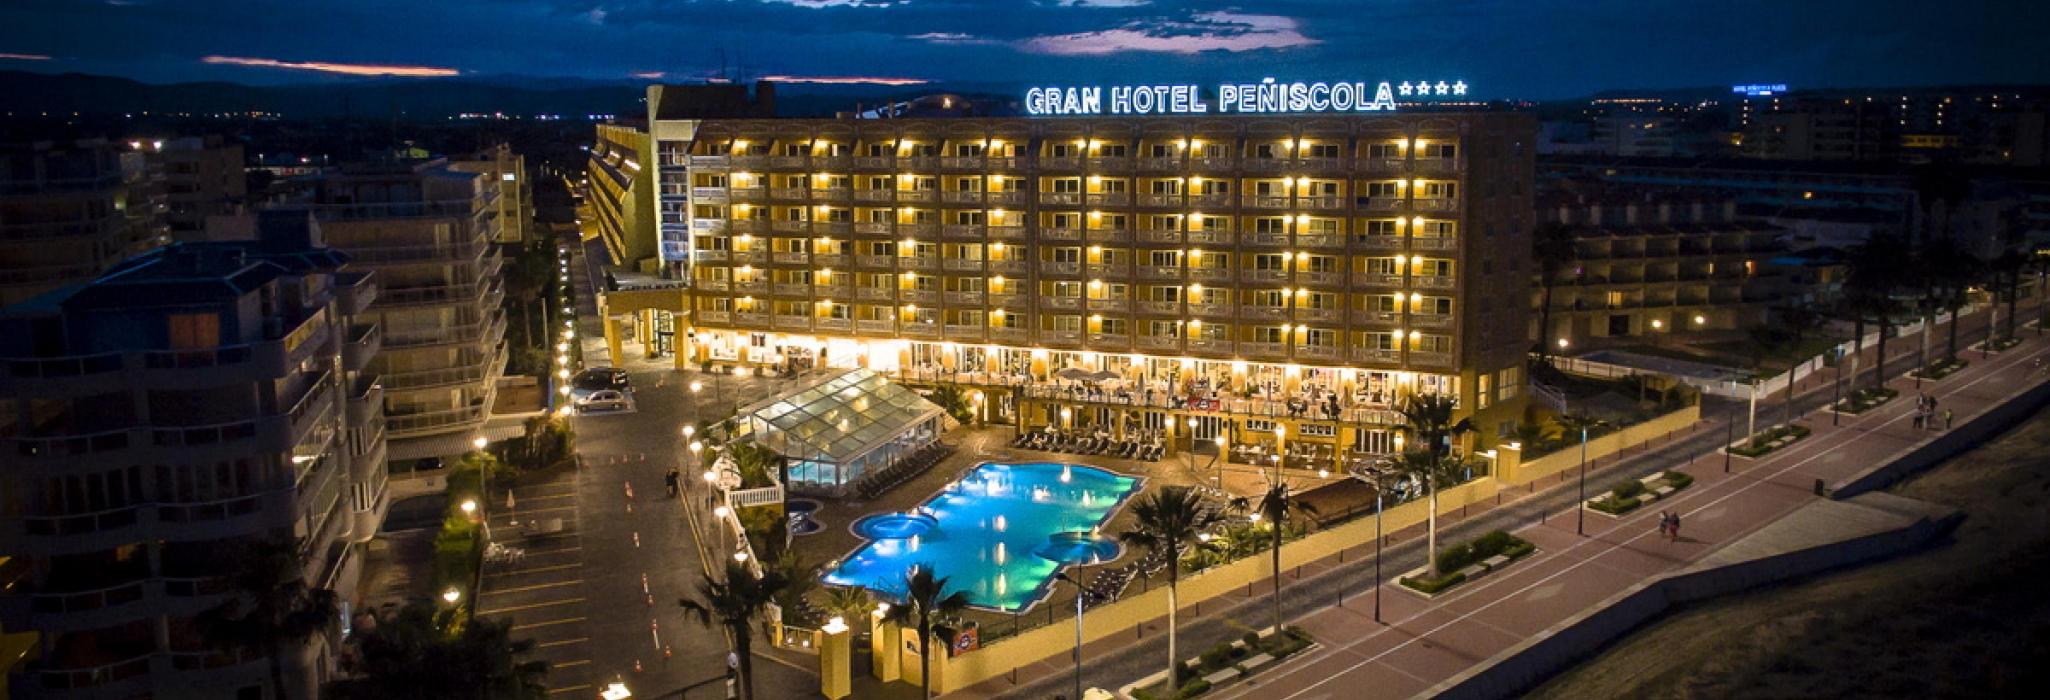 El Gran Hotel Peñíscola****, uno de los 10 mejores hoteles de playa según el metabuscador SKYSCANNER